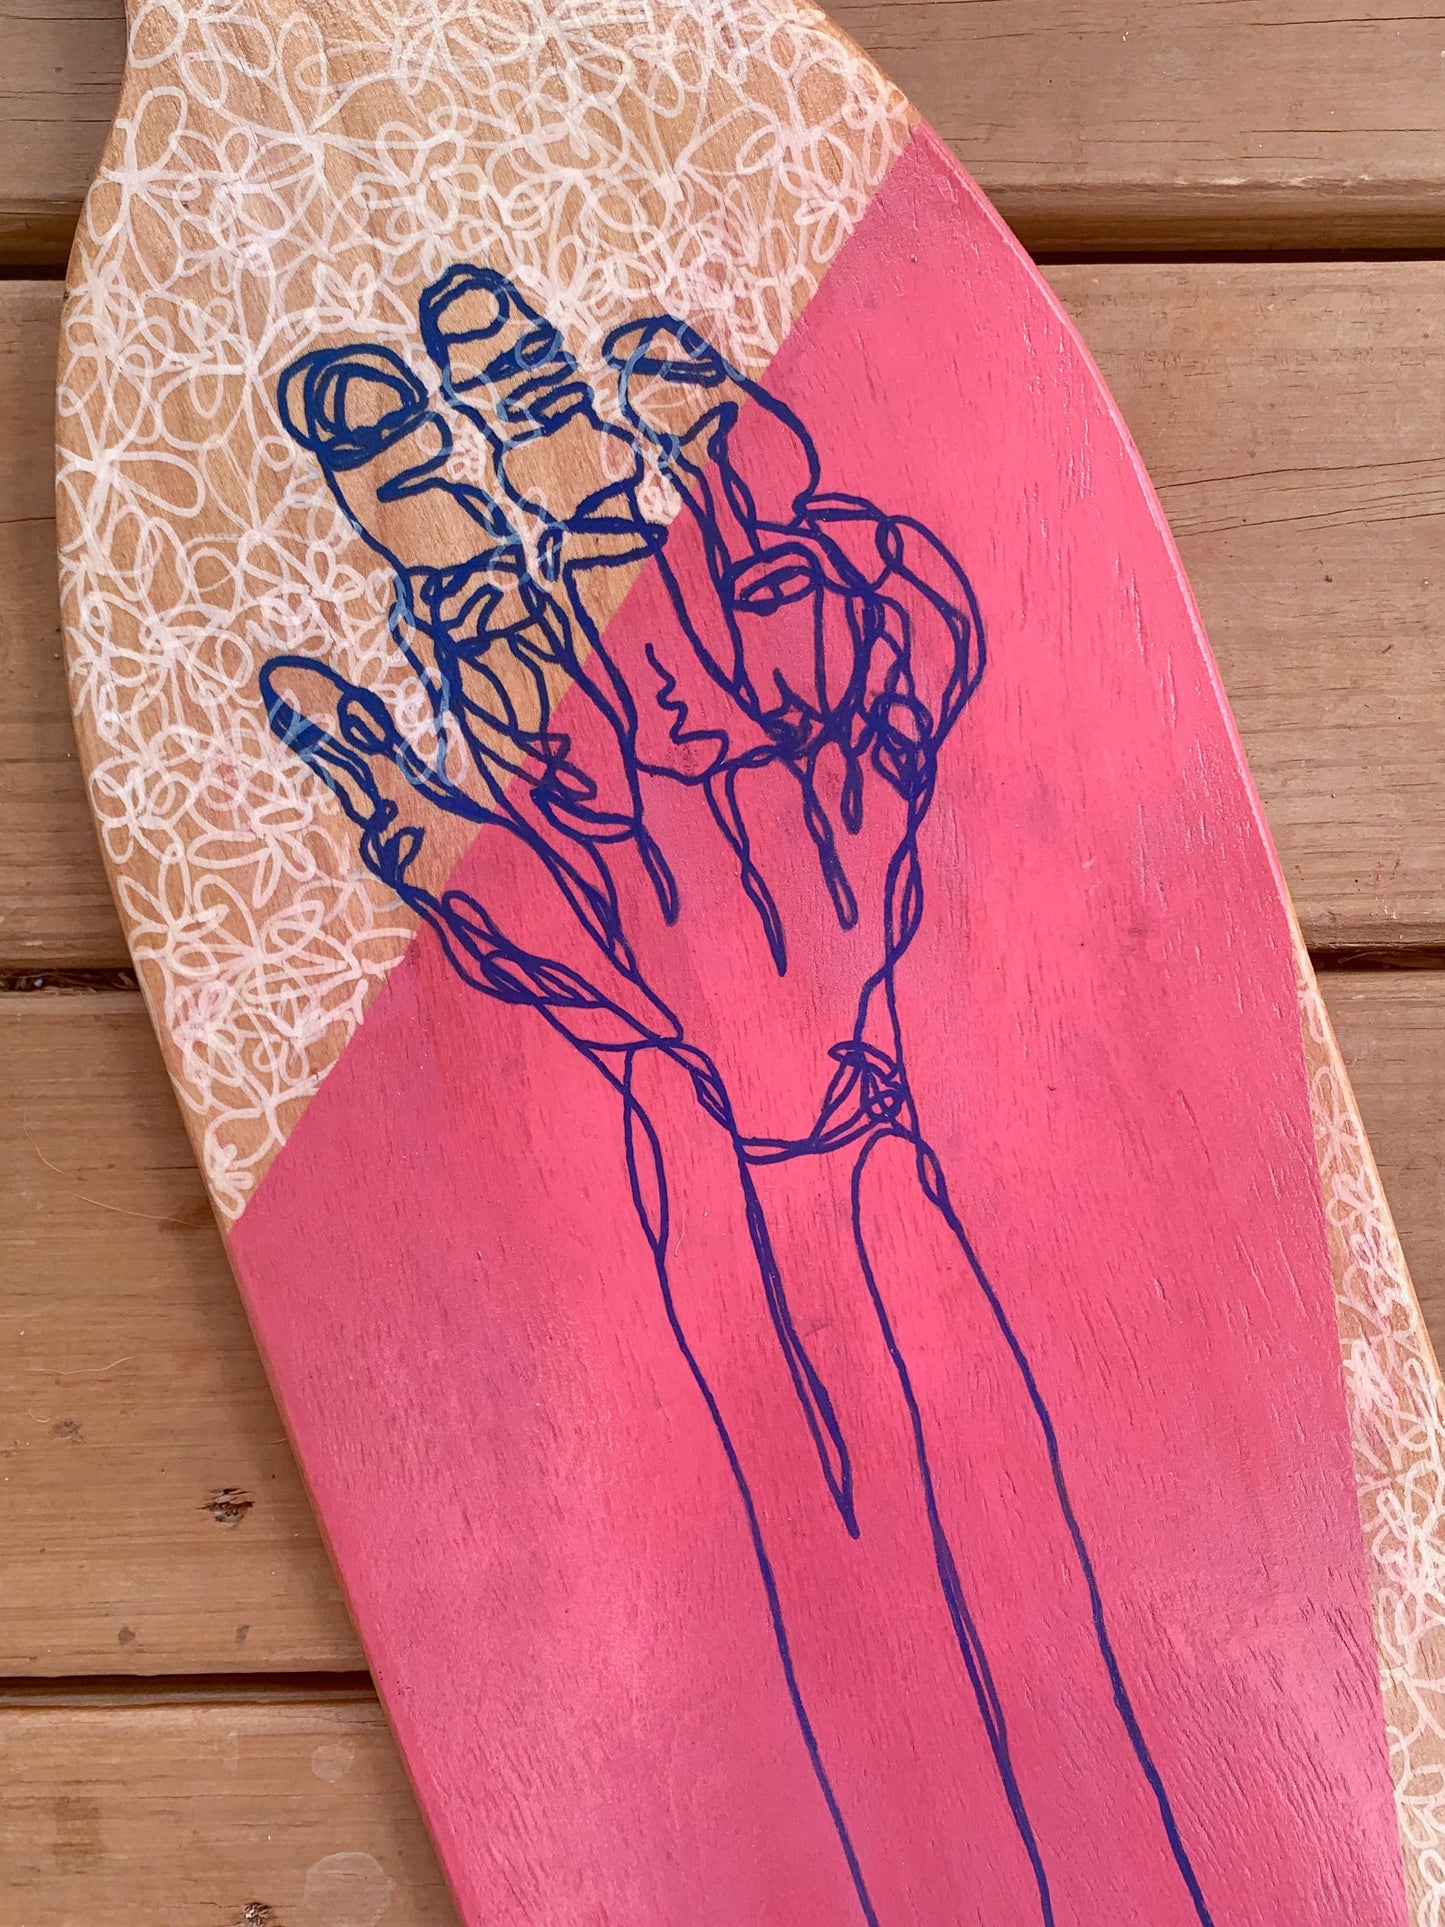 "Mutual Aid" Skateboard Deck